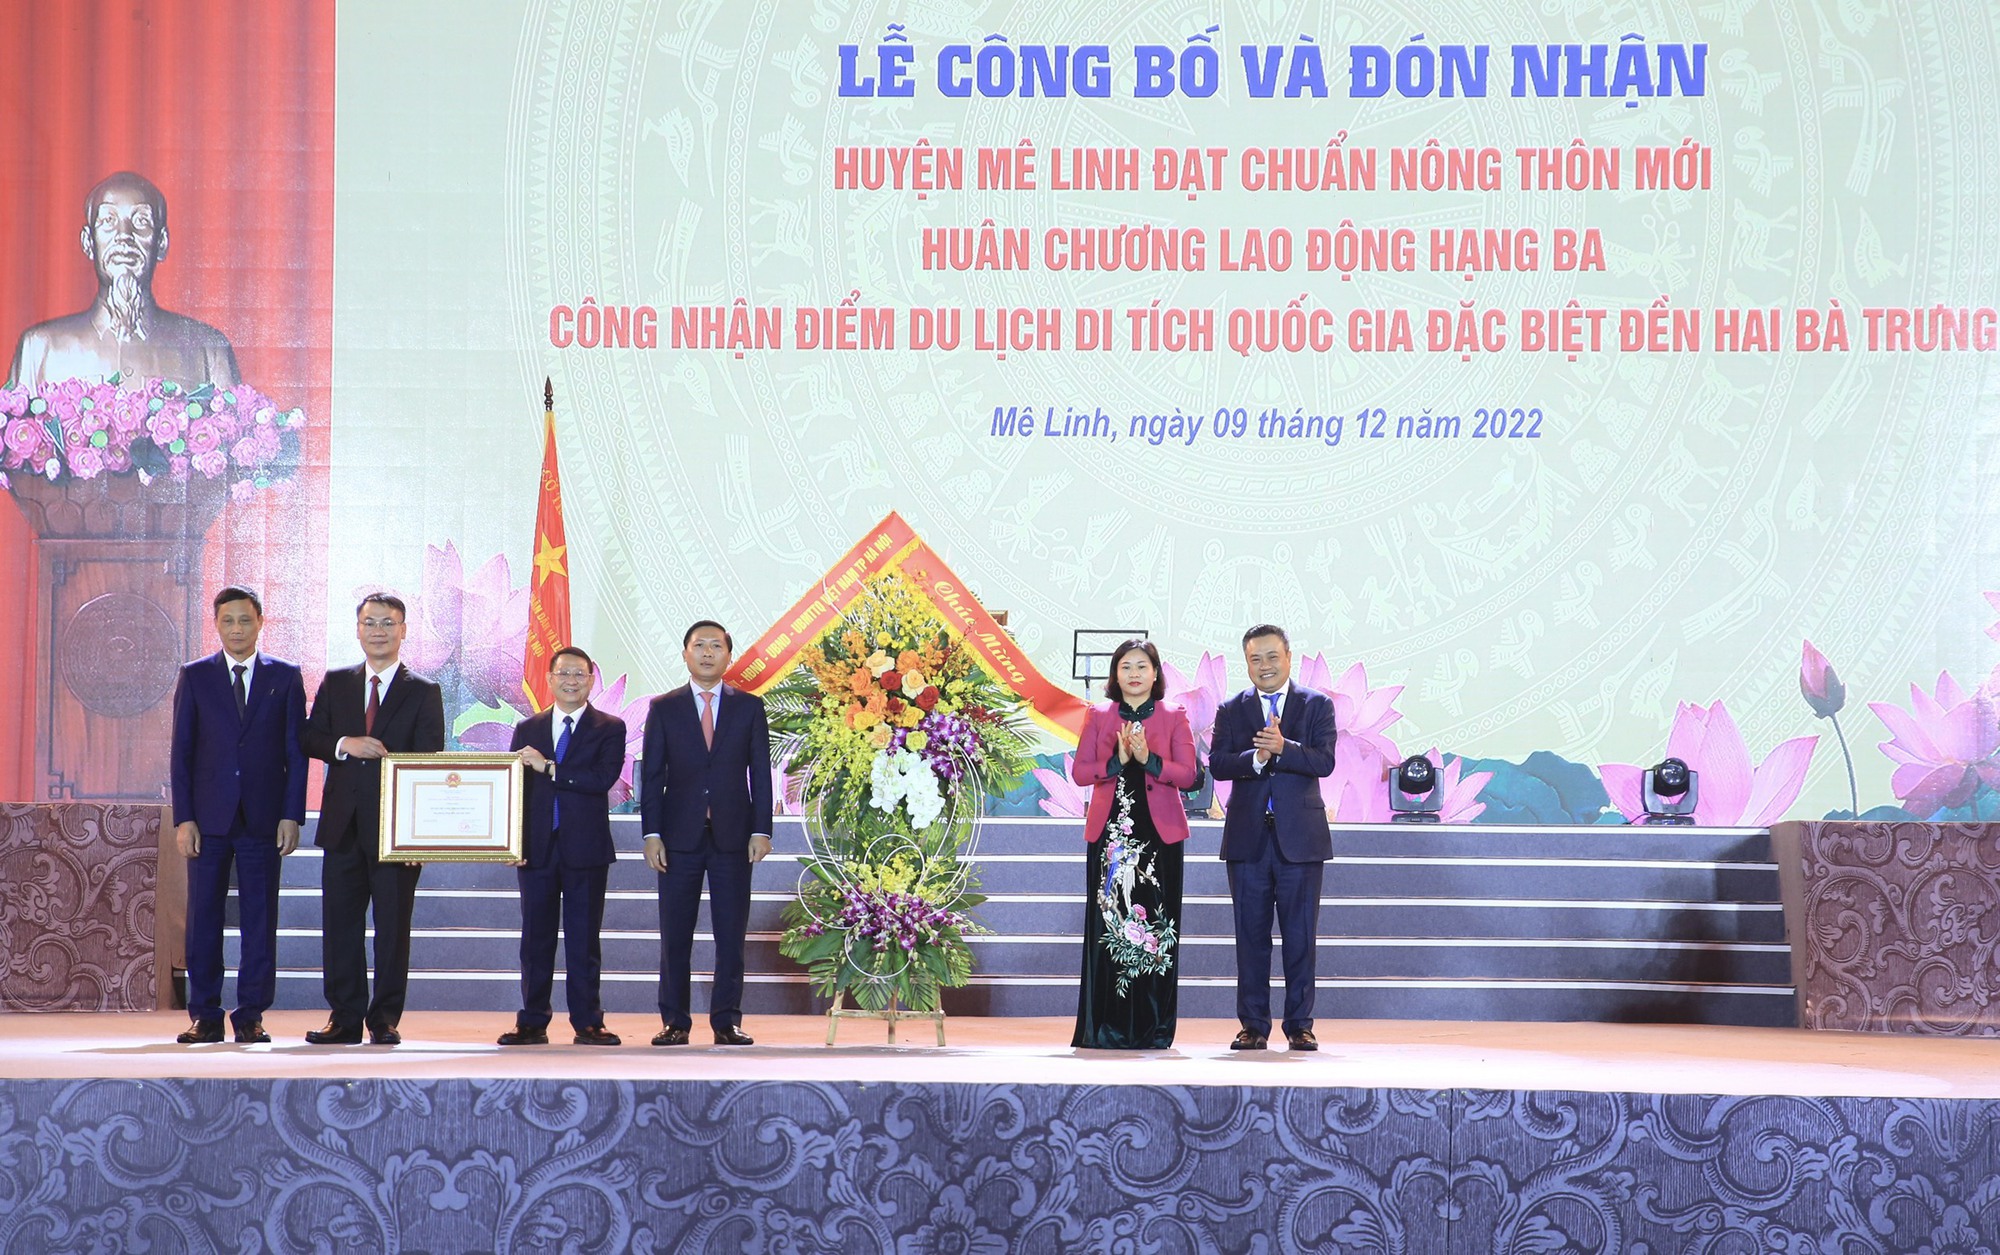 Hà Nội:Huyện Mê Linh công bố đạt chuẩn nông thôn mới và điểm du lịch Di tích Quốc gia đặc biệt Đền Hai Bà Trưng - Ảnh 2.